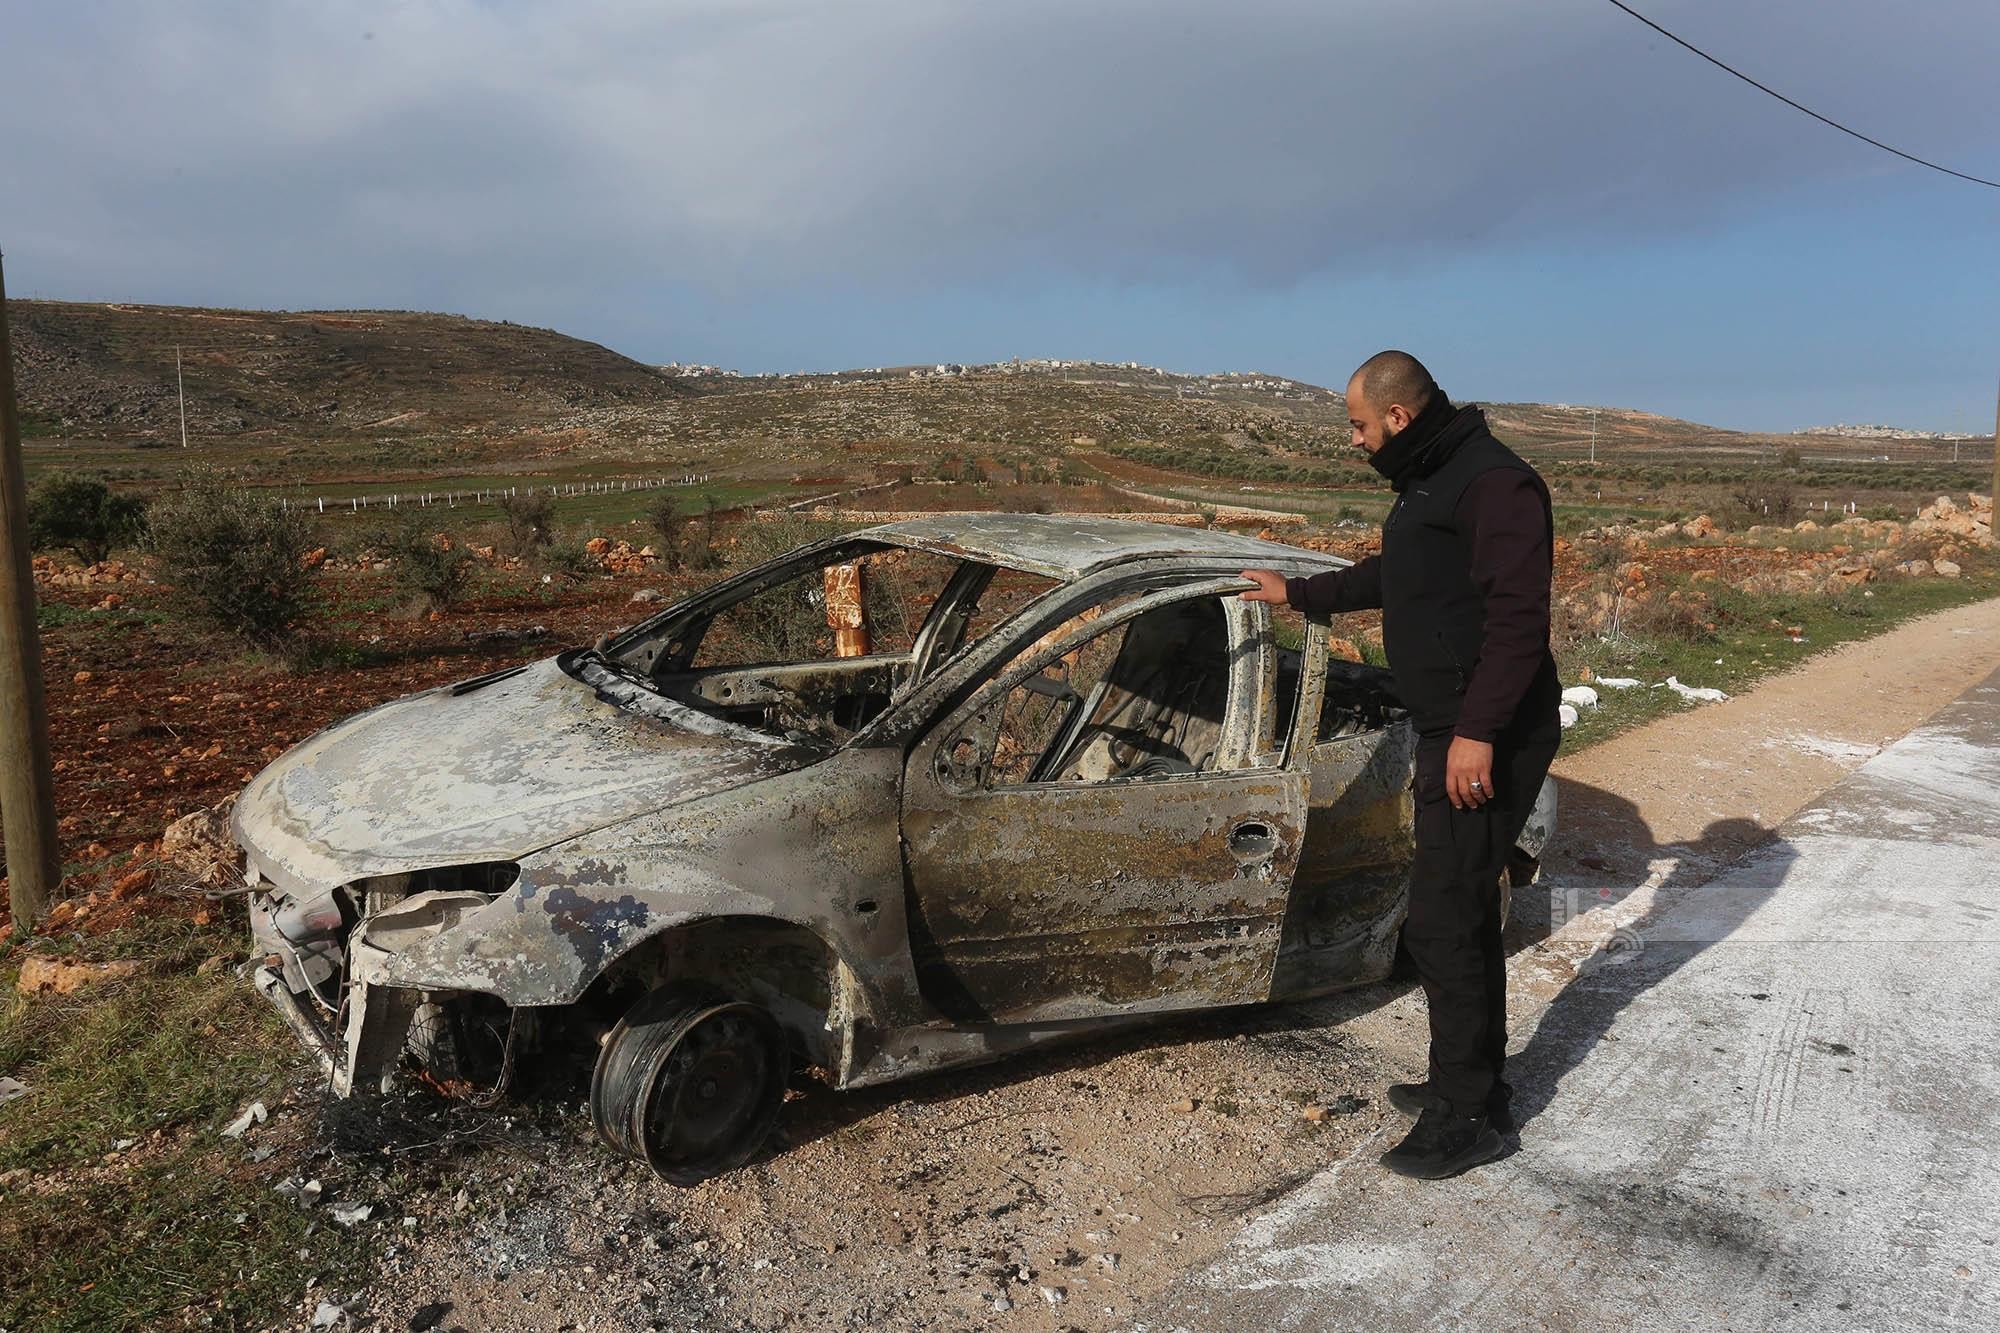 مستوطنون يحرقون ست مركبات فلسطينية بشكل كامل بين بلدتي عقربا ومجدل بني فاضل قرب نابلس.jpg